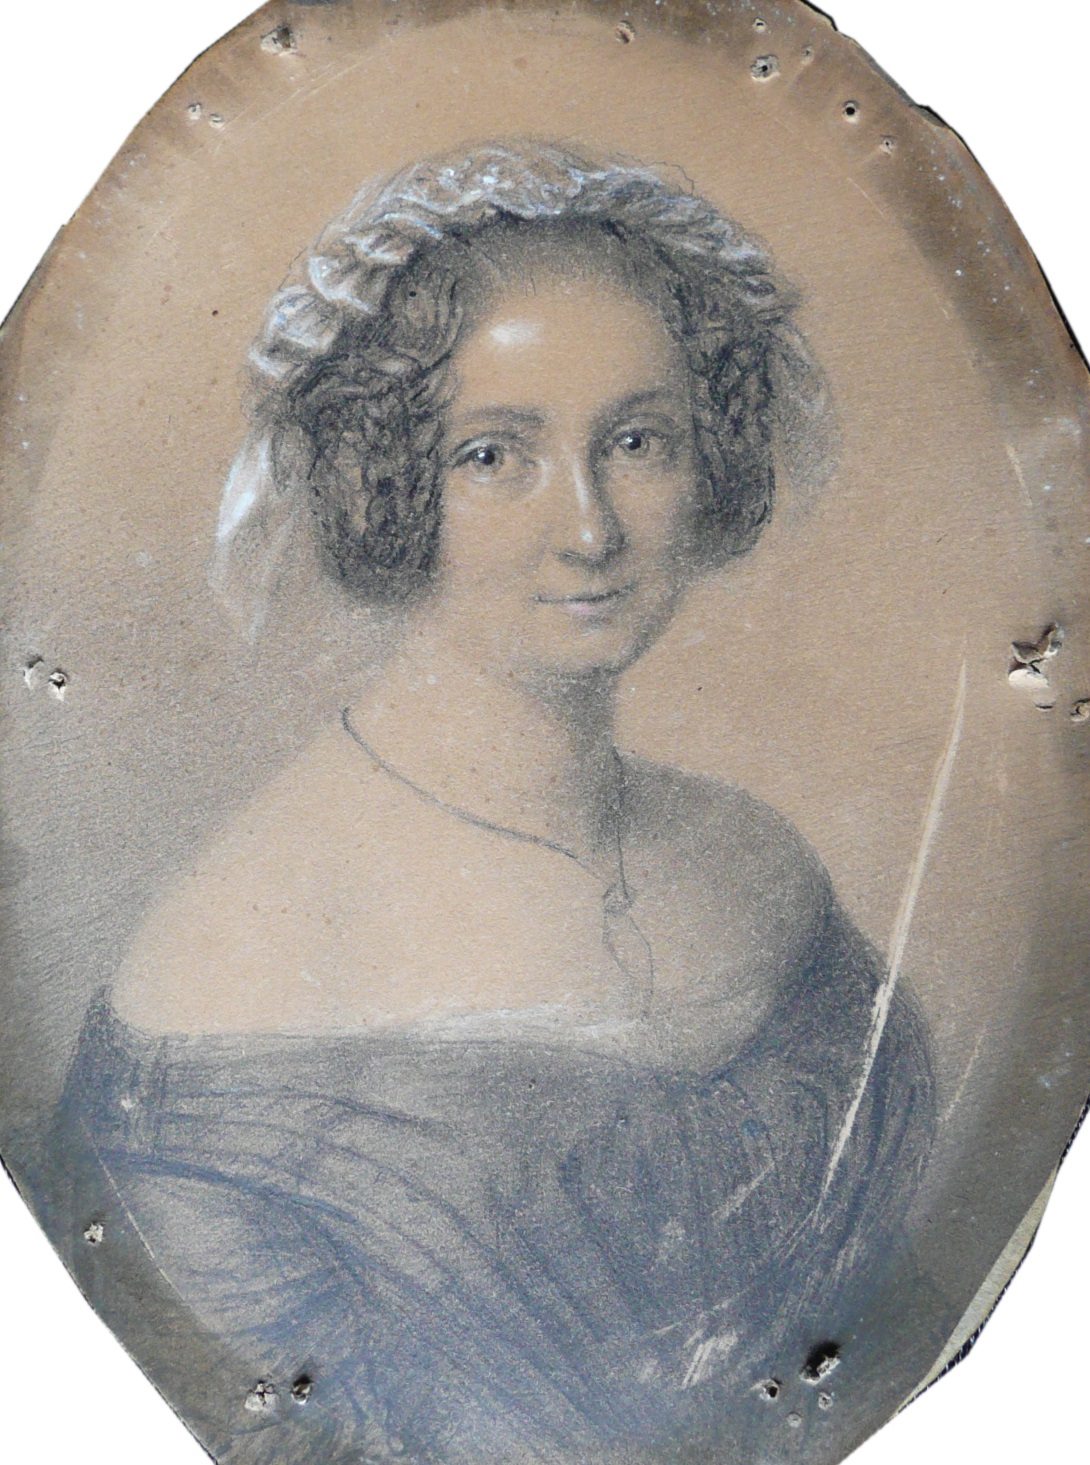  Dilia Helena, Pastellzeichnung, ca. 1840, Quelle: Privatbesitz, Foto: Emanuela Freiin von Branca (geb. 1958), München.